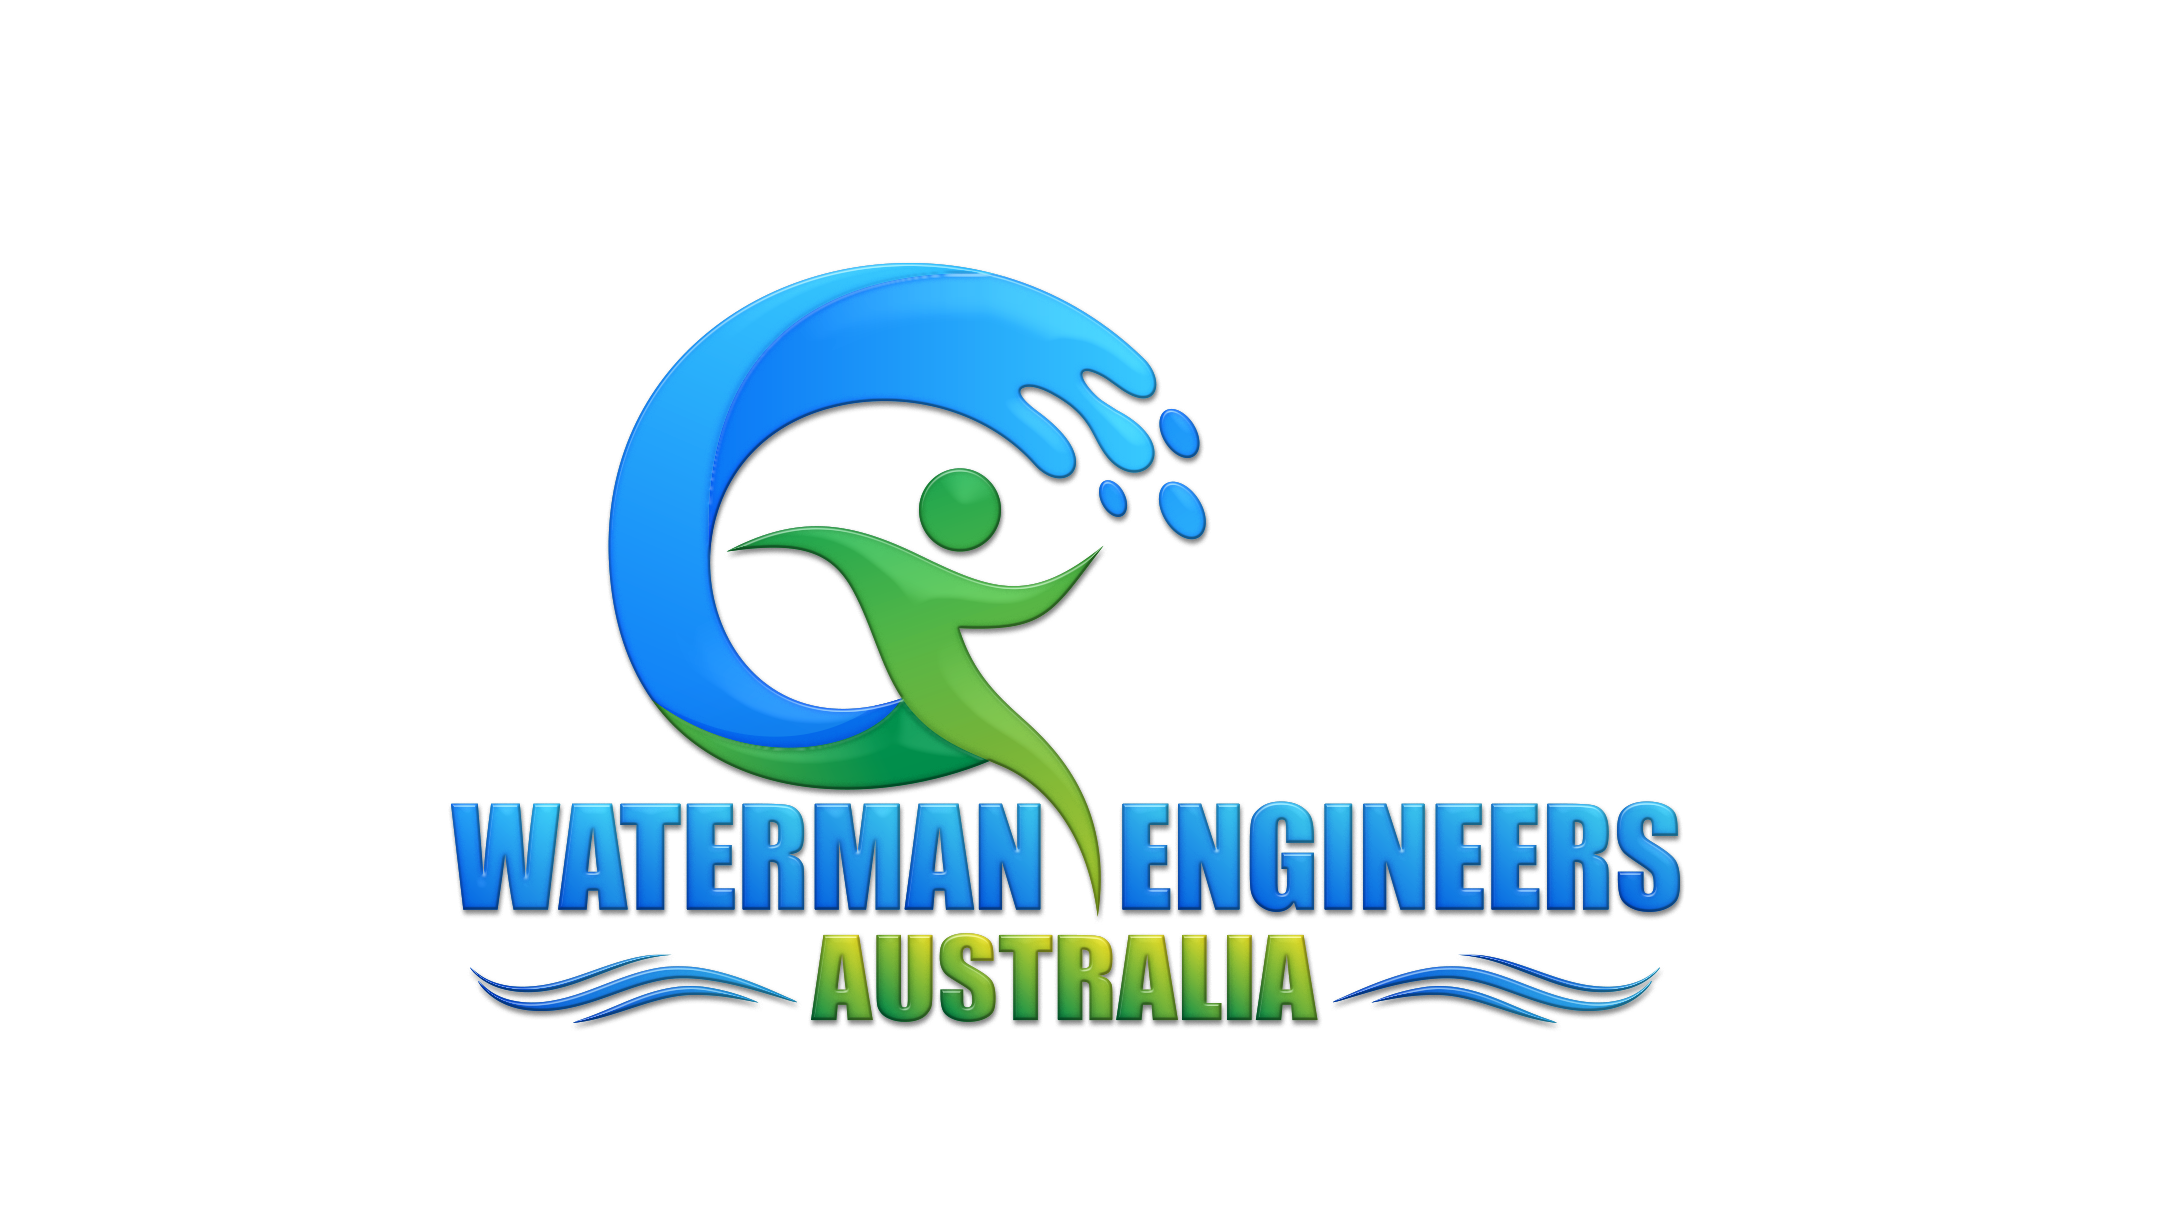 WATERMAN ENGINEERS AUSTRALIA